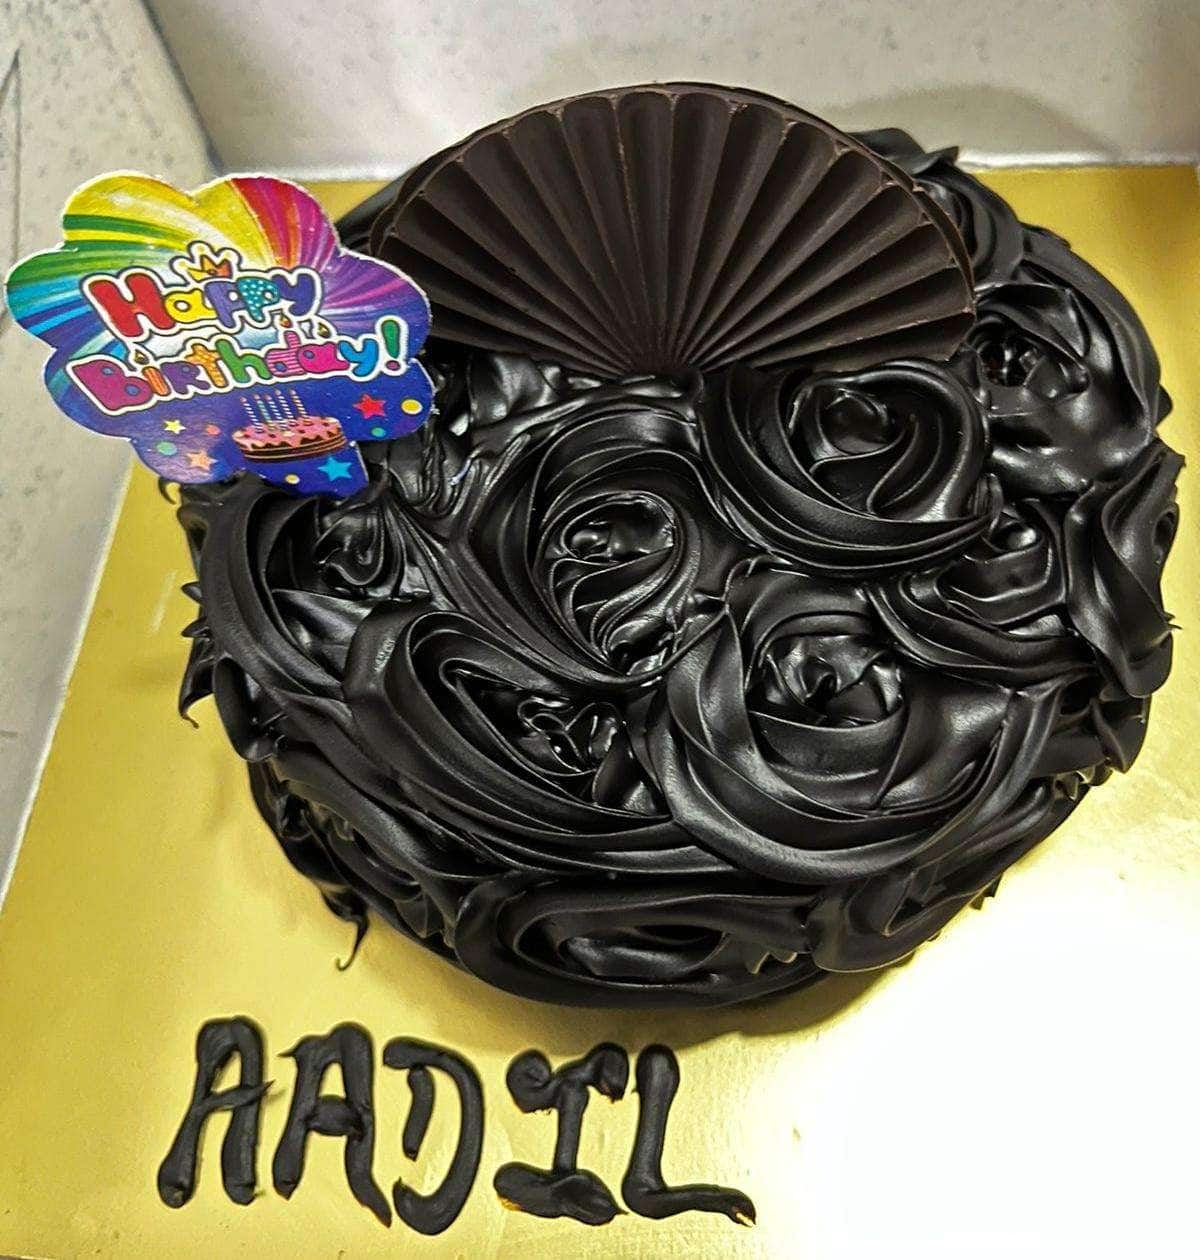 Aadil Happy Birthday Cakes Pics Gallery